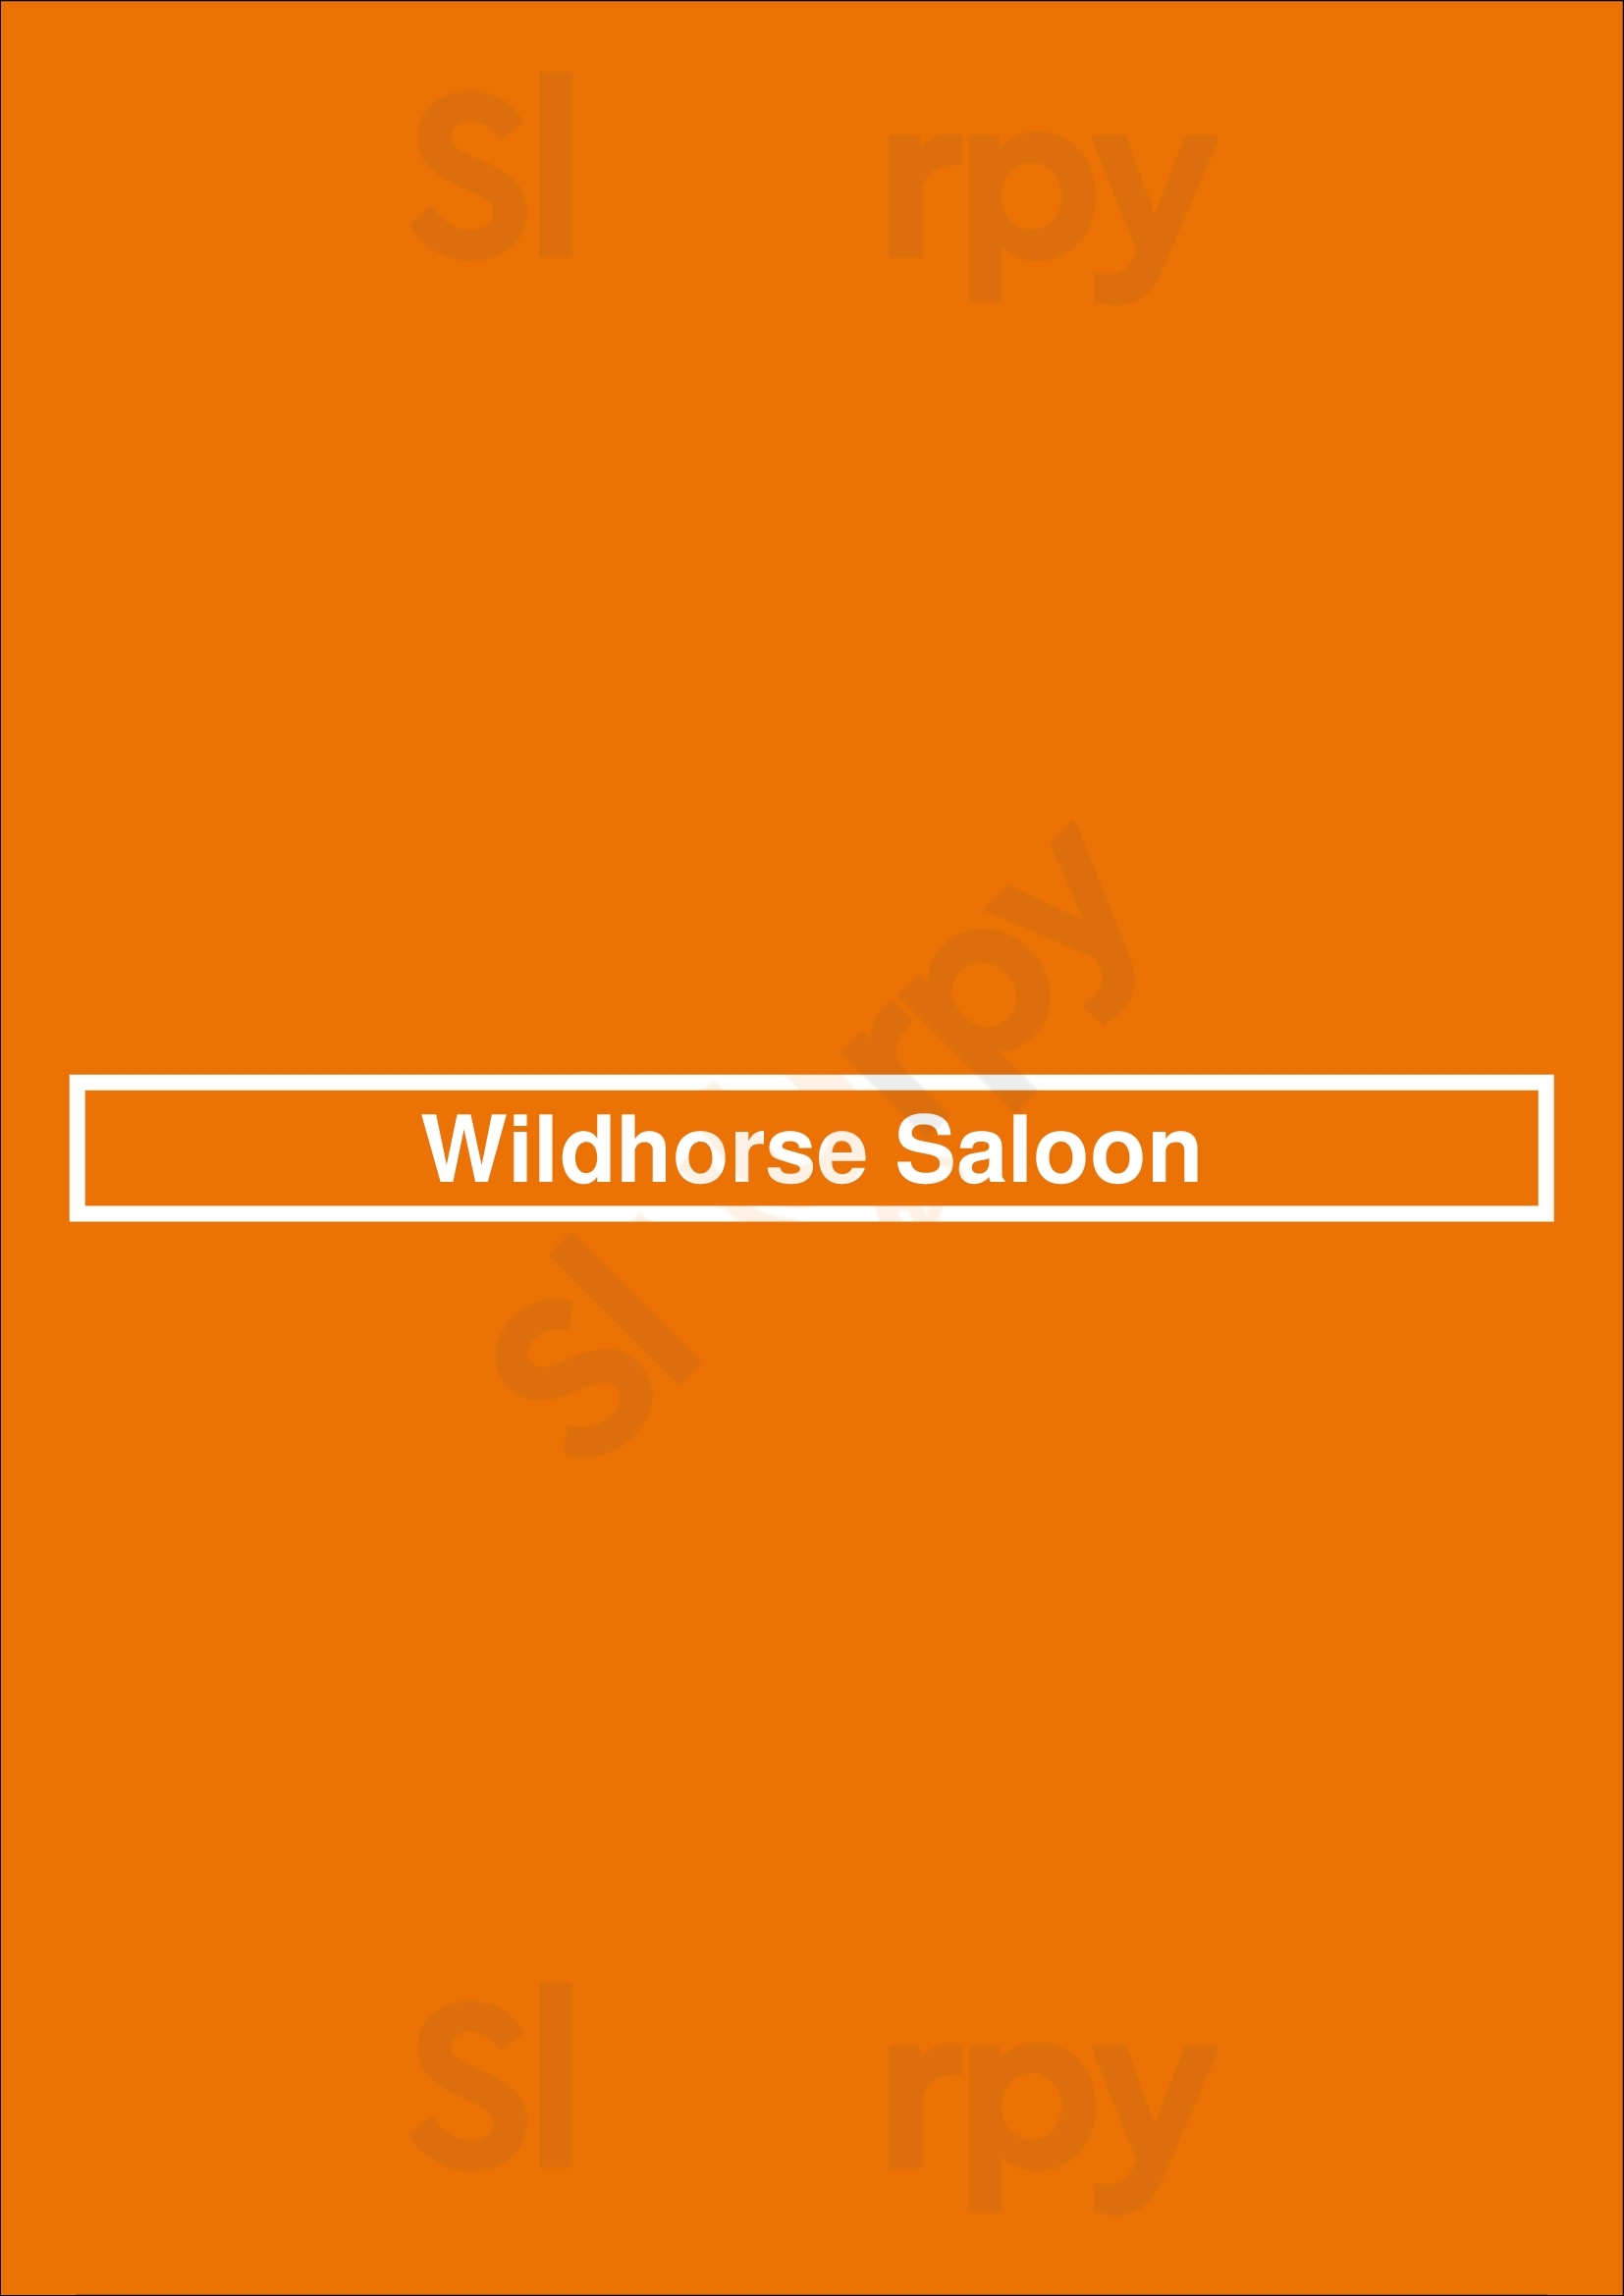 Wildhorse Saloon Nashville Menu - 1